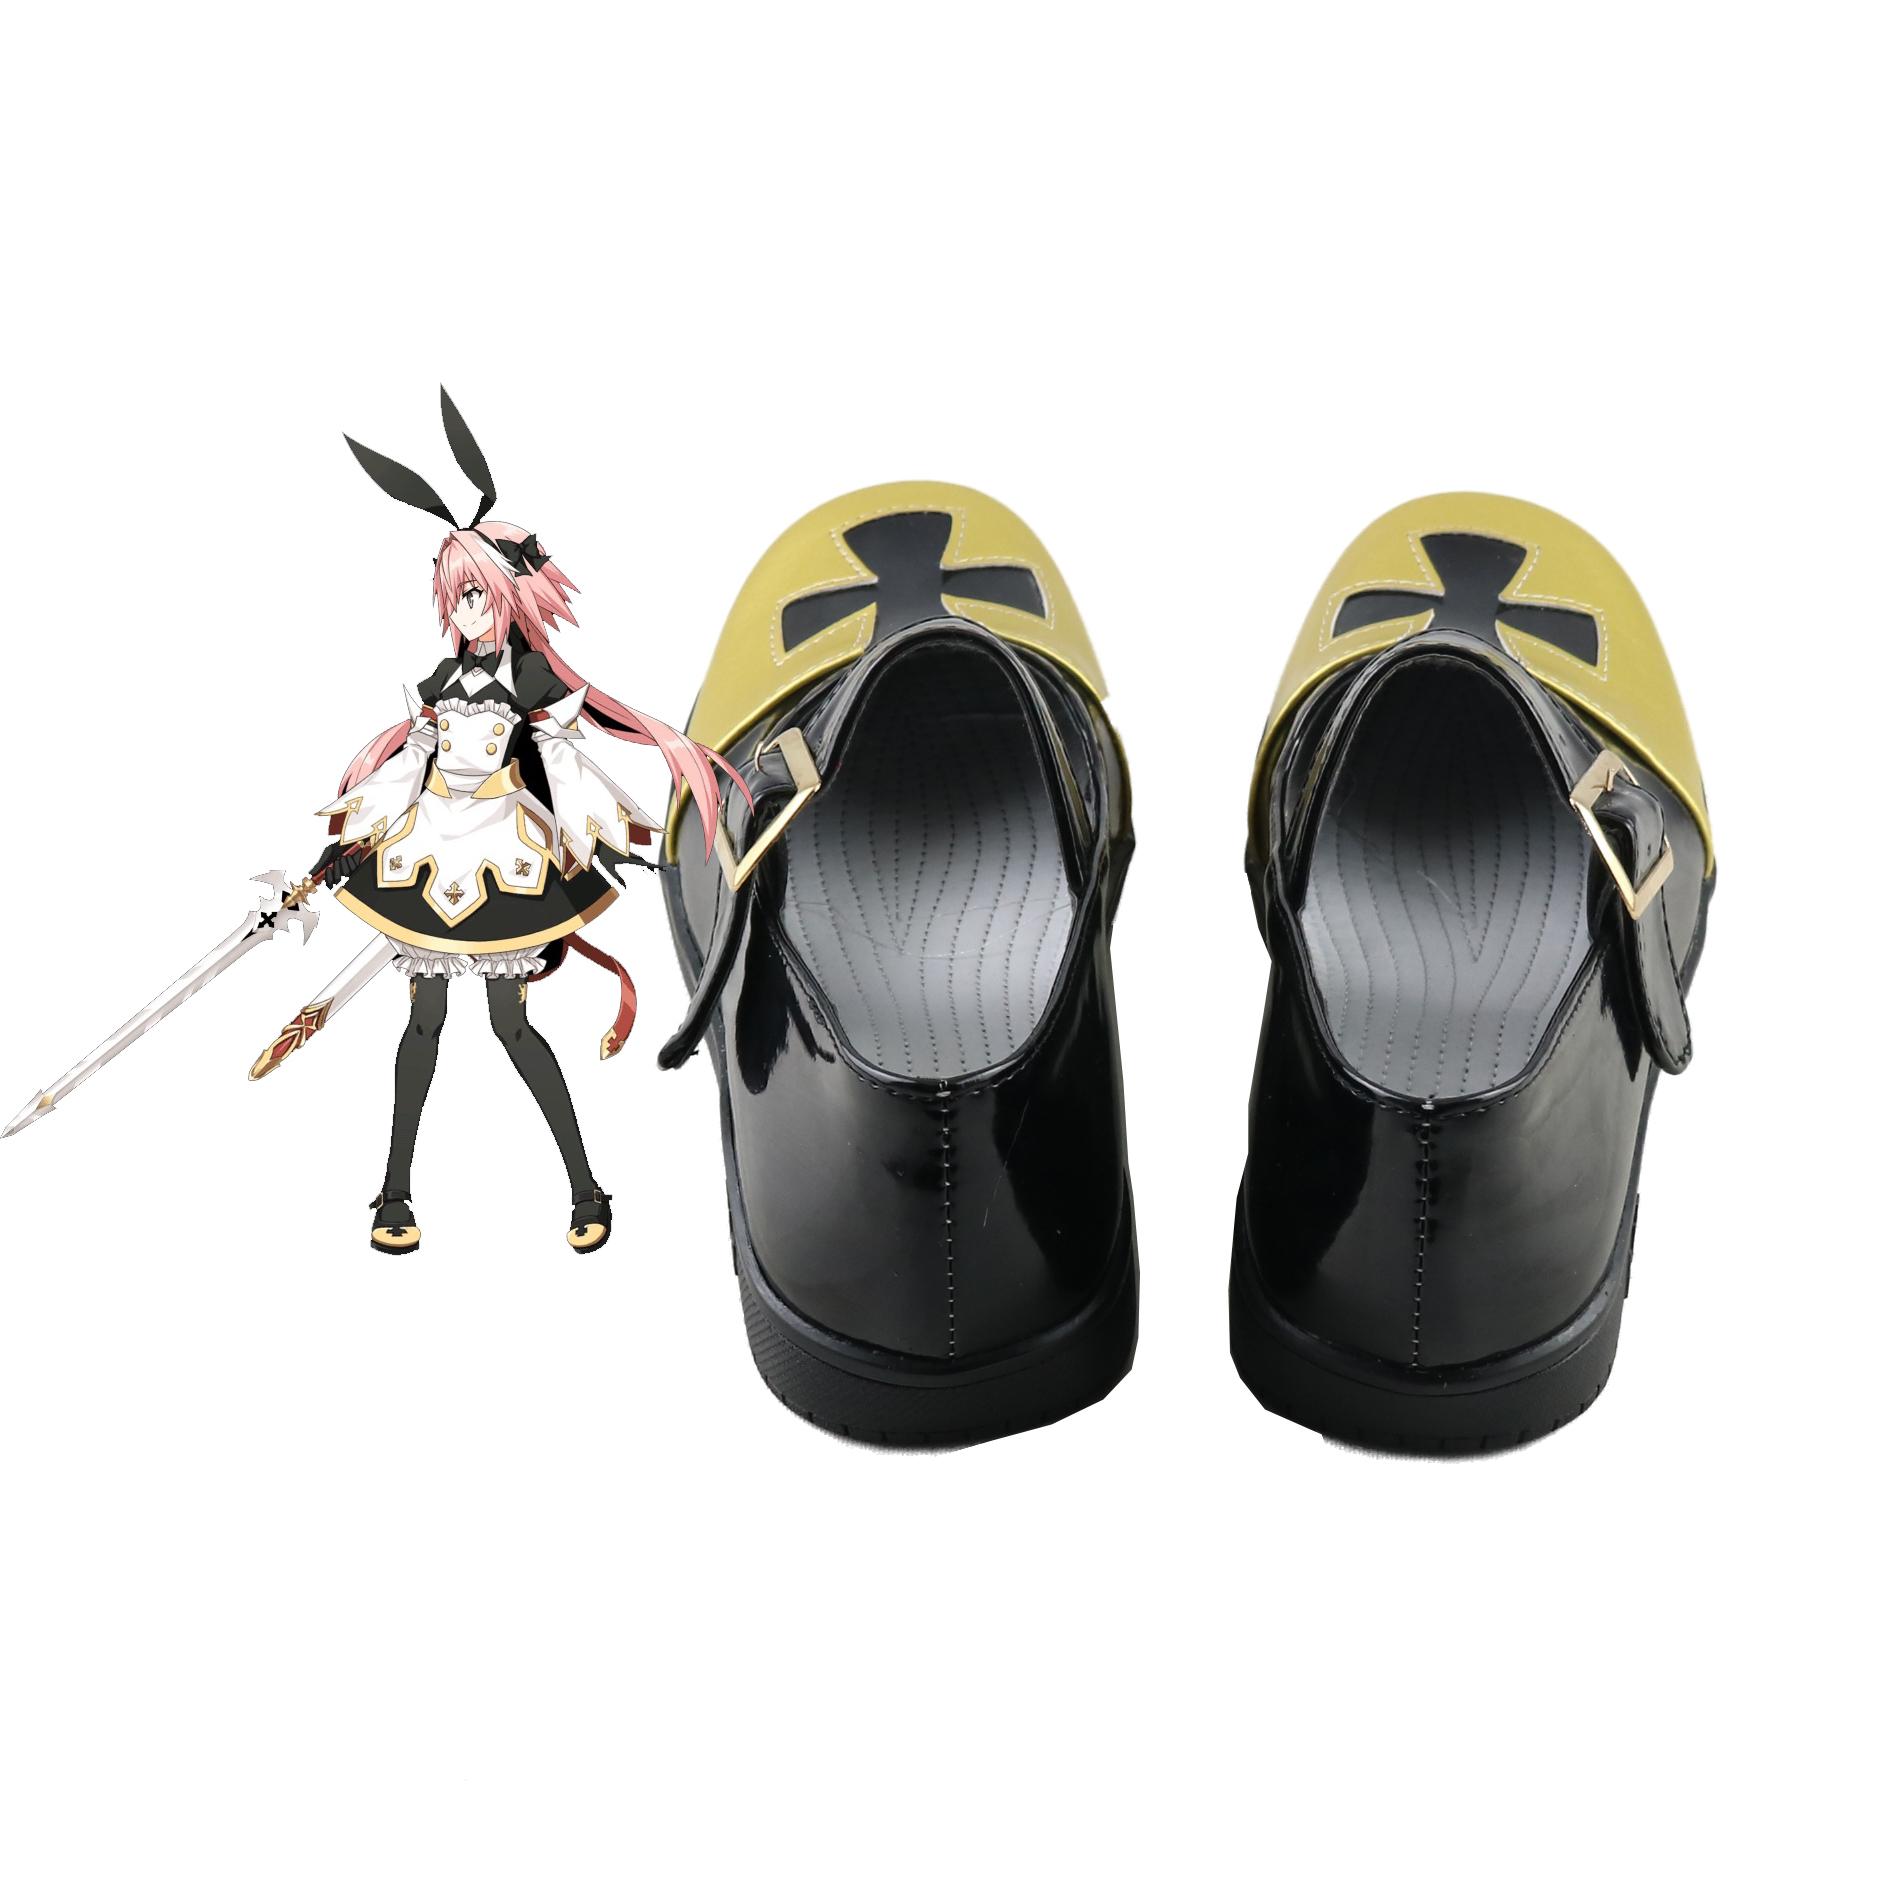 Изображение товара: Fate Grand Order/FGO Astolfo (Saber) Этап 3 косплей костюм обувь Рыцарь испарителя Sanity Хэллоуин косплей обувь милая женщина